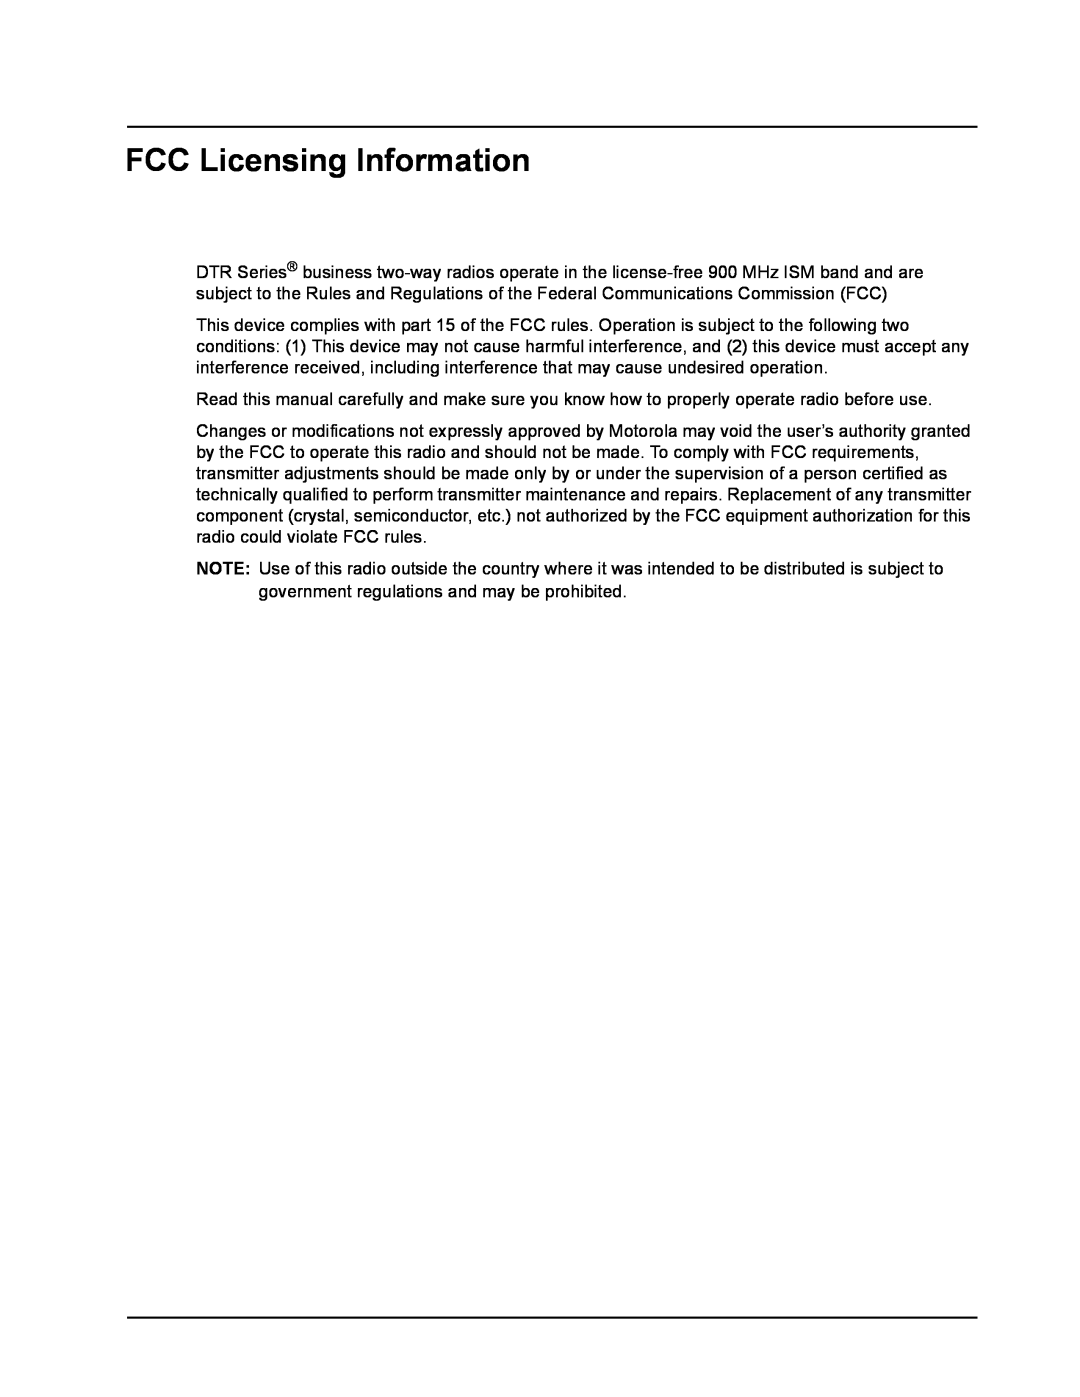 Motorola DTR610, DTR410, DTR510 manual FCC Licensing Information 